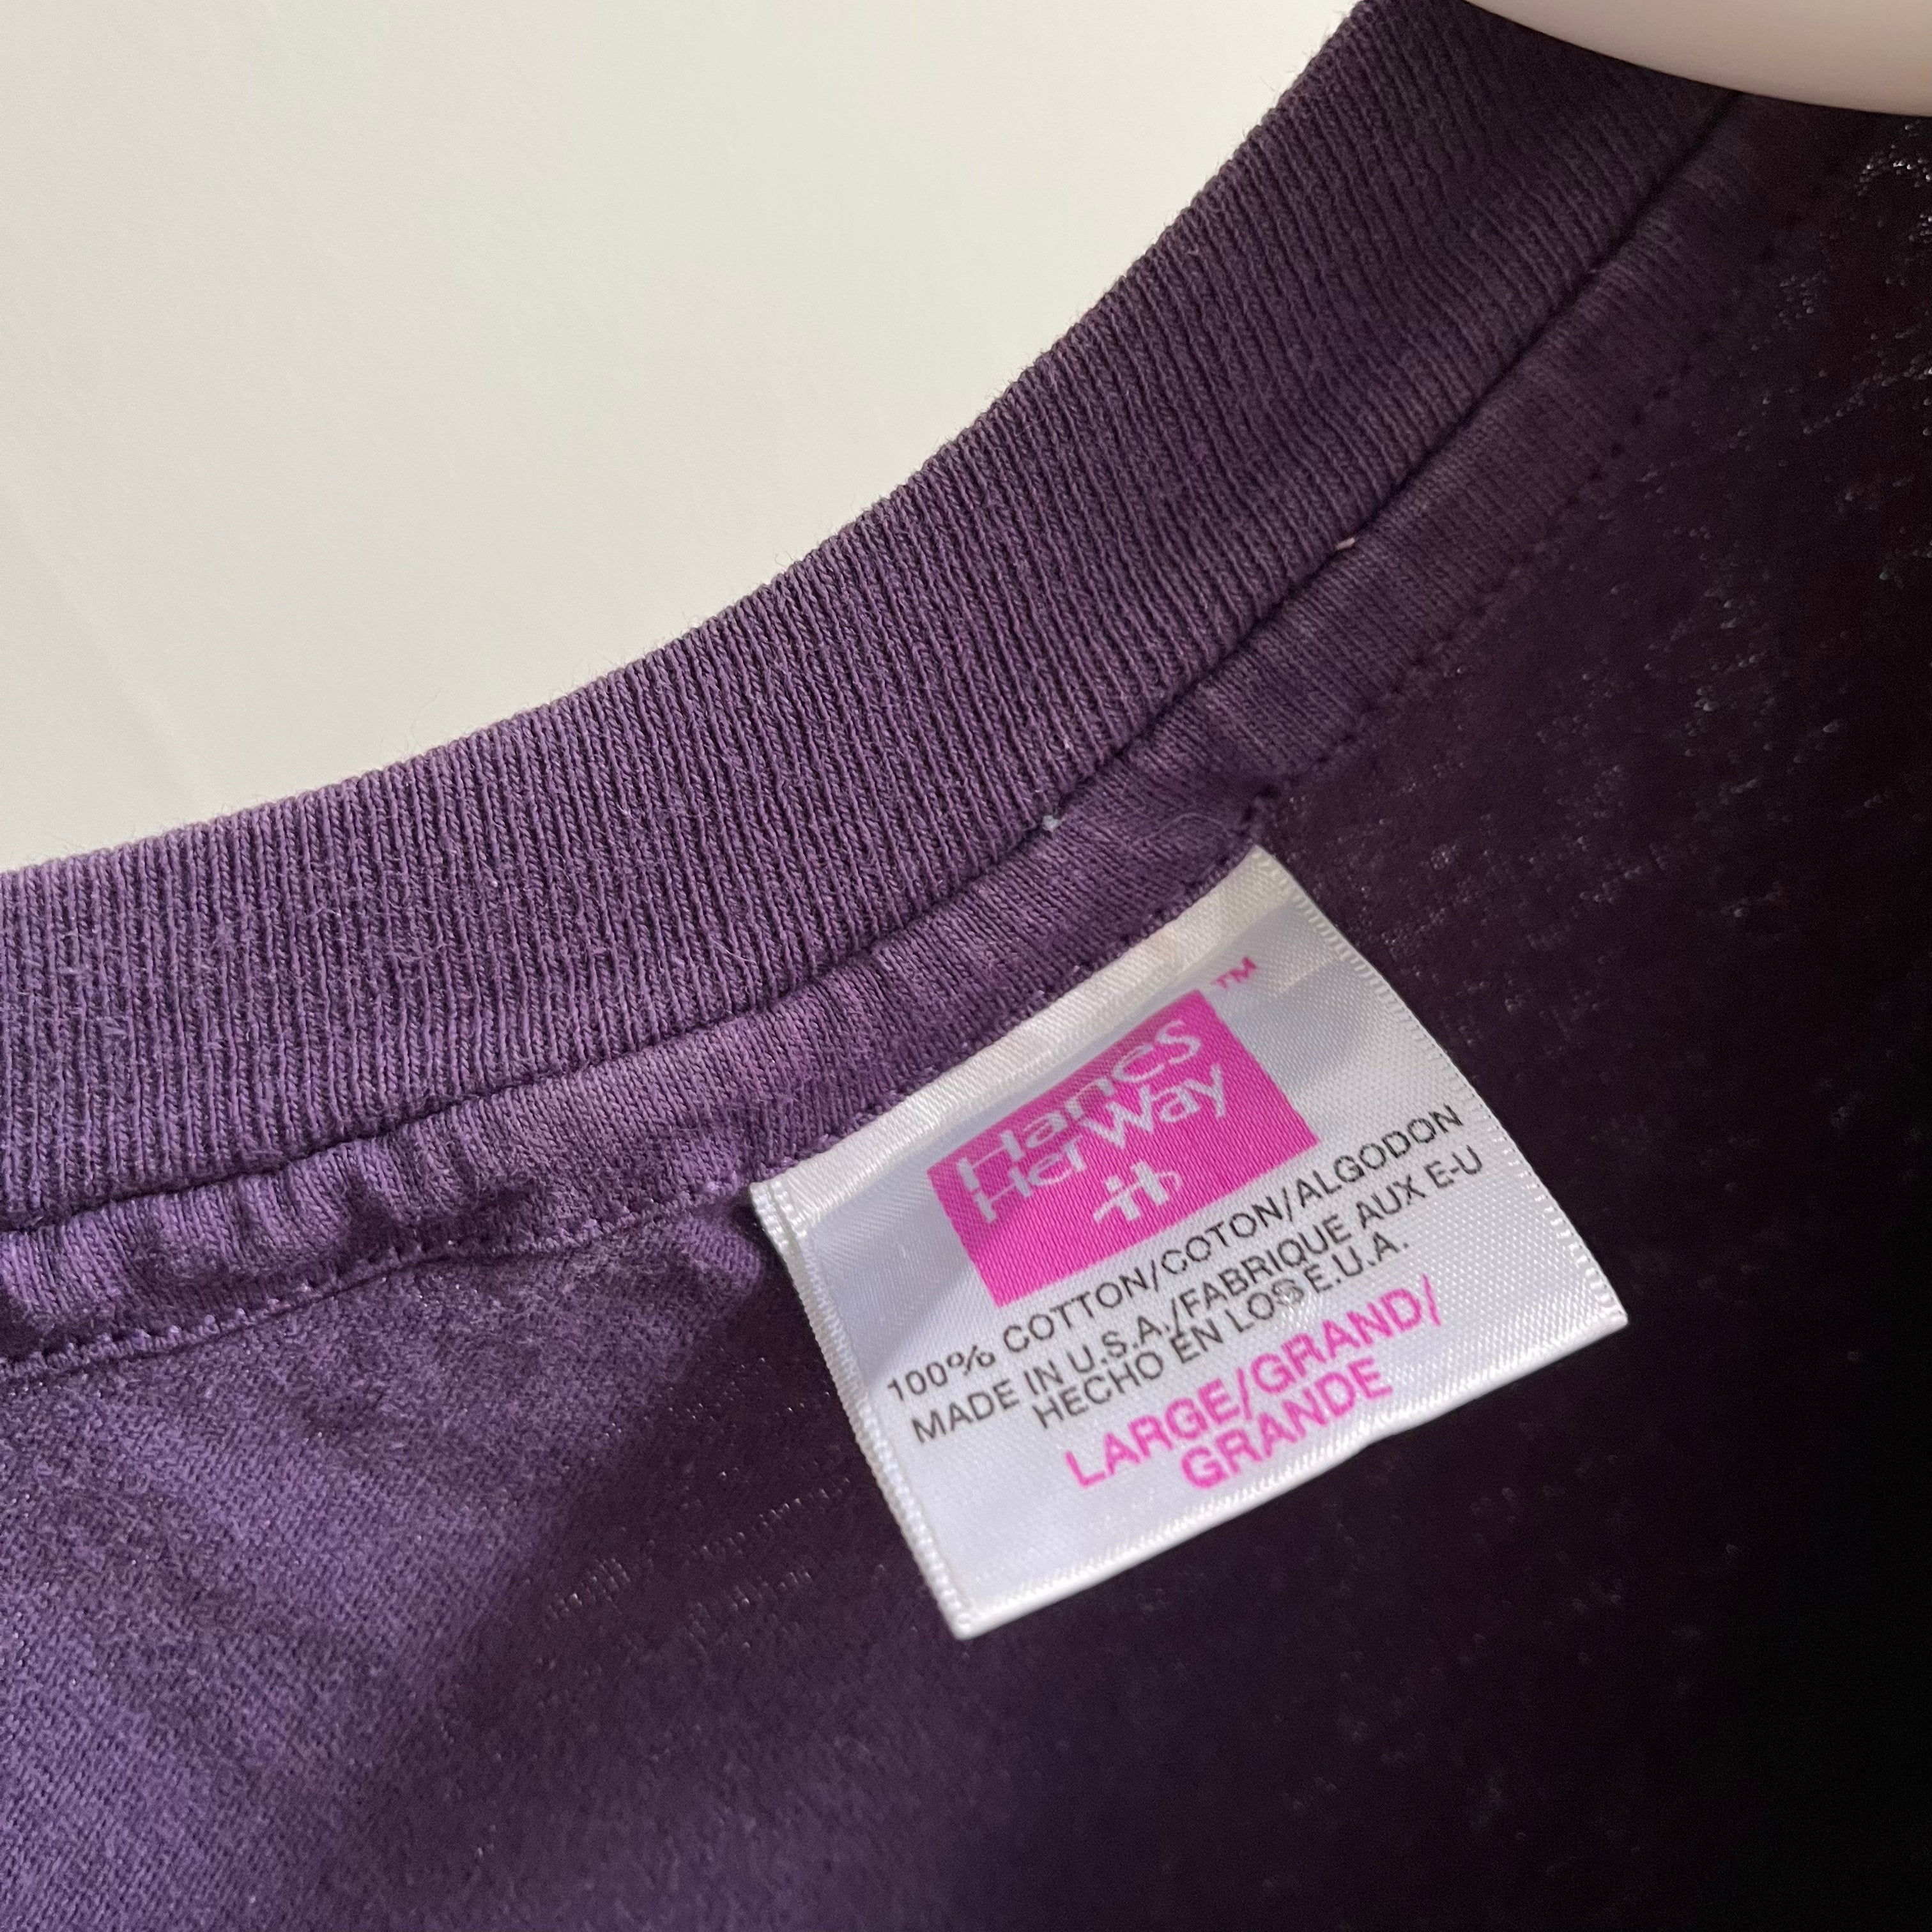 T-shirt Hanes Her Way violet doux et usé des années 1990